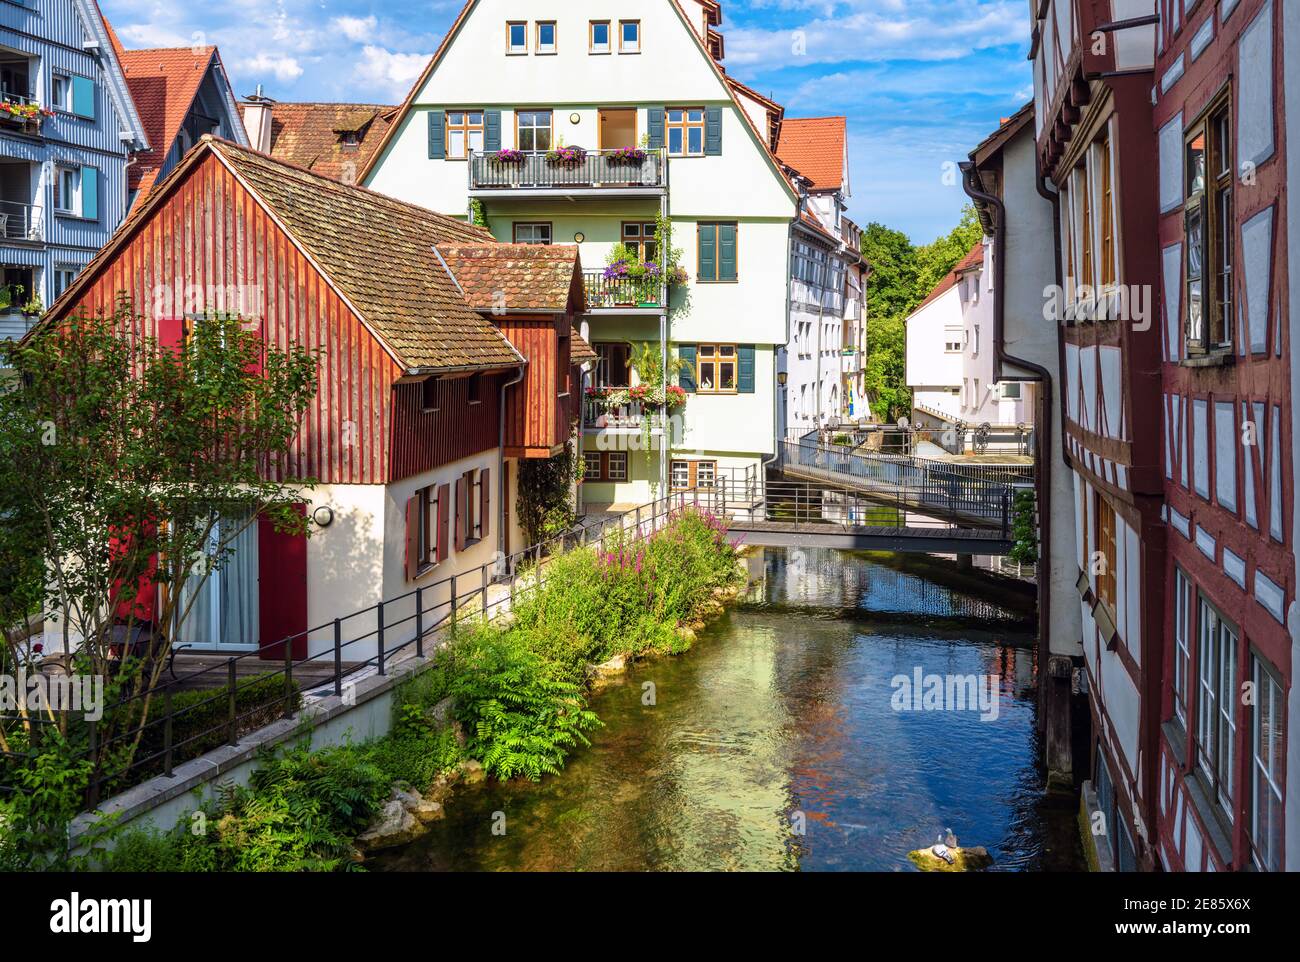 Ulm ciudad, Alemania. Bonita vista de las hermosas casas antiguas y el canal en el histórico barrio de los pescadores. Este lugar es la famosa atracción turística de Ulm. SCEN Foto de stock